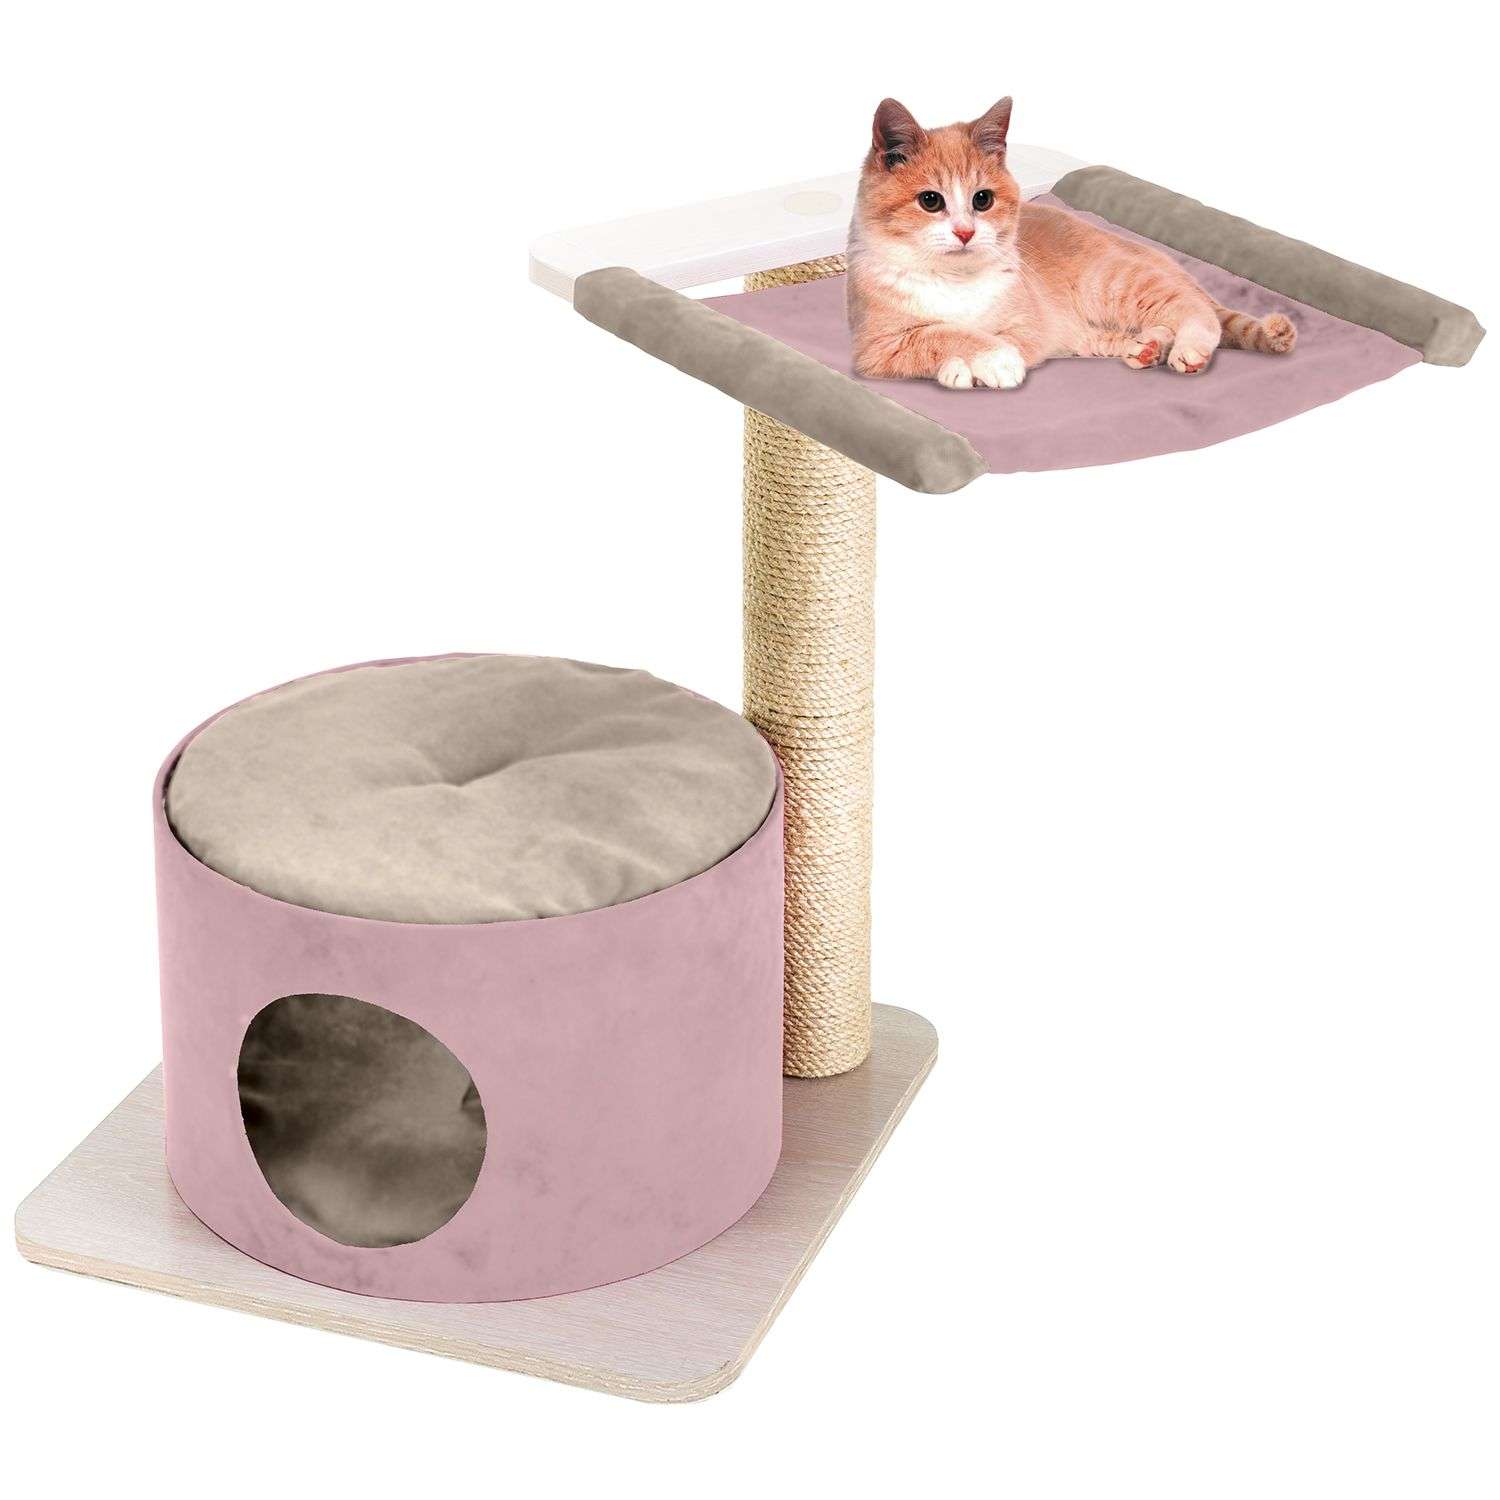 Спально-игровой комплекс для кошек Ferplast Simba 74061000 - фото 2